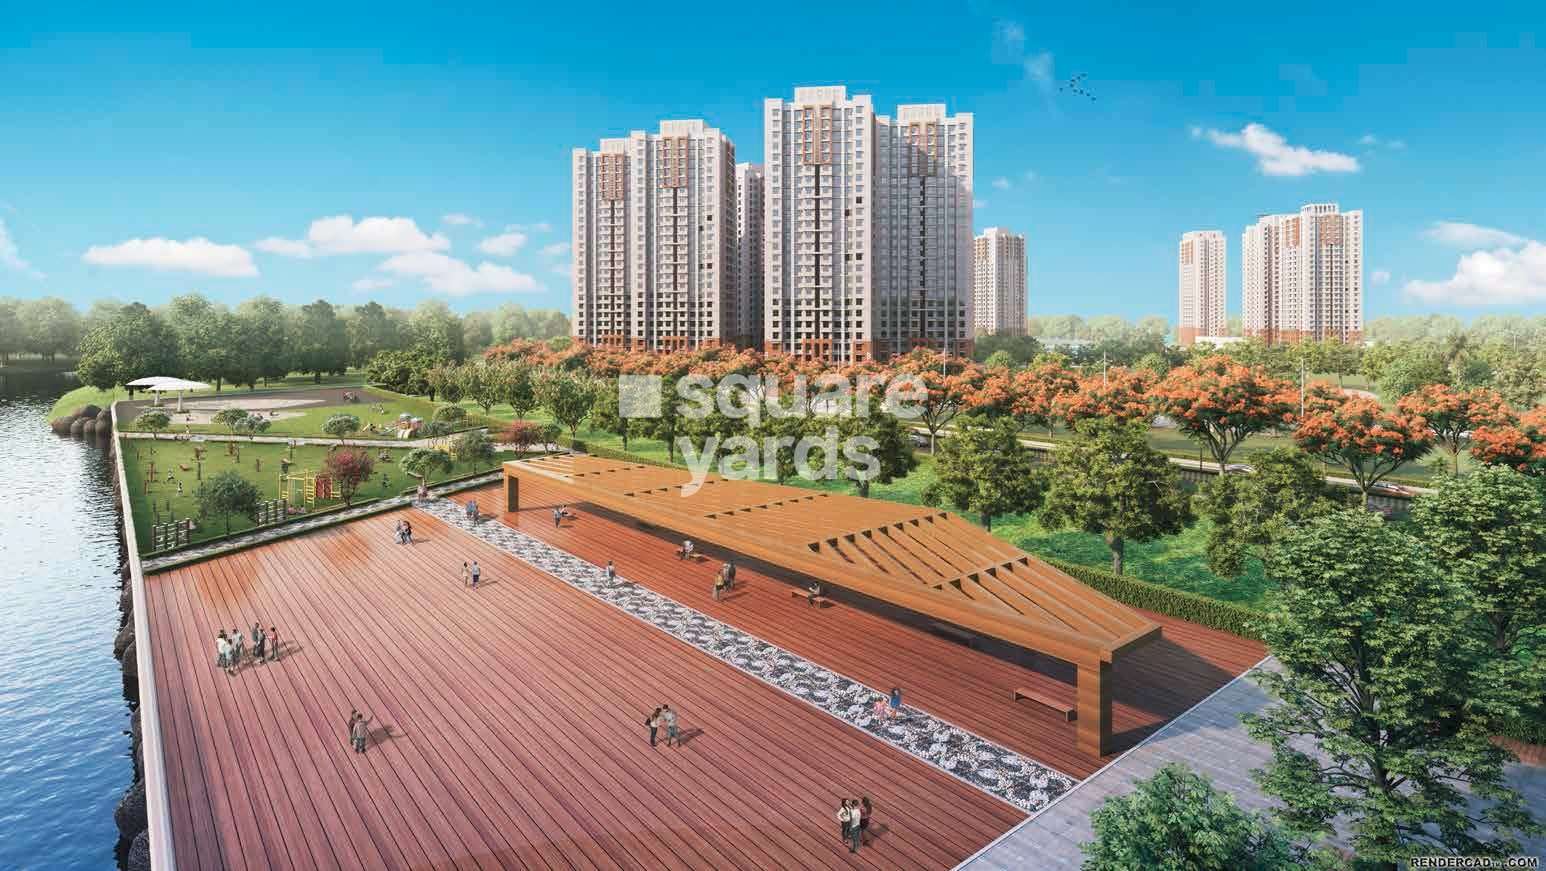 neptune ramrajya udaan d project amenities features6 4374